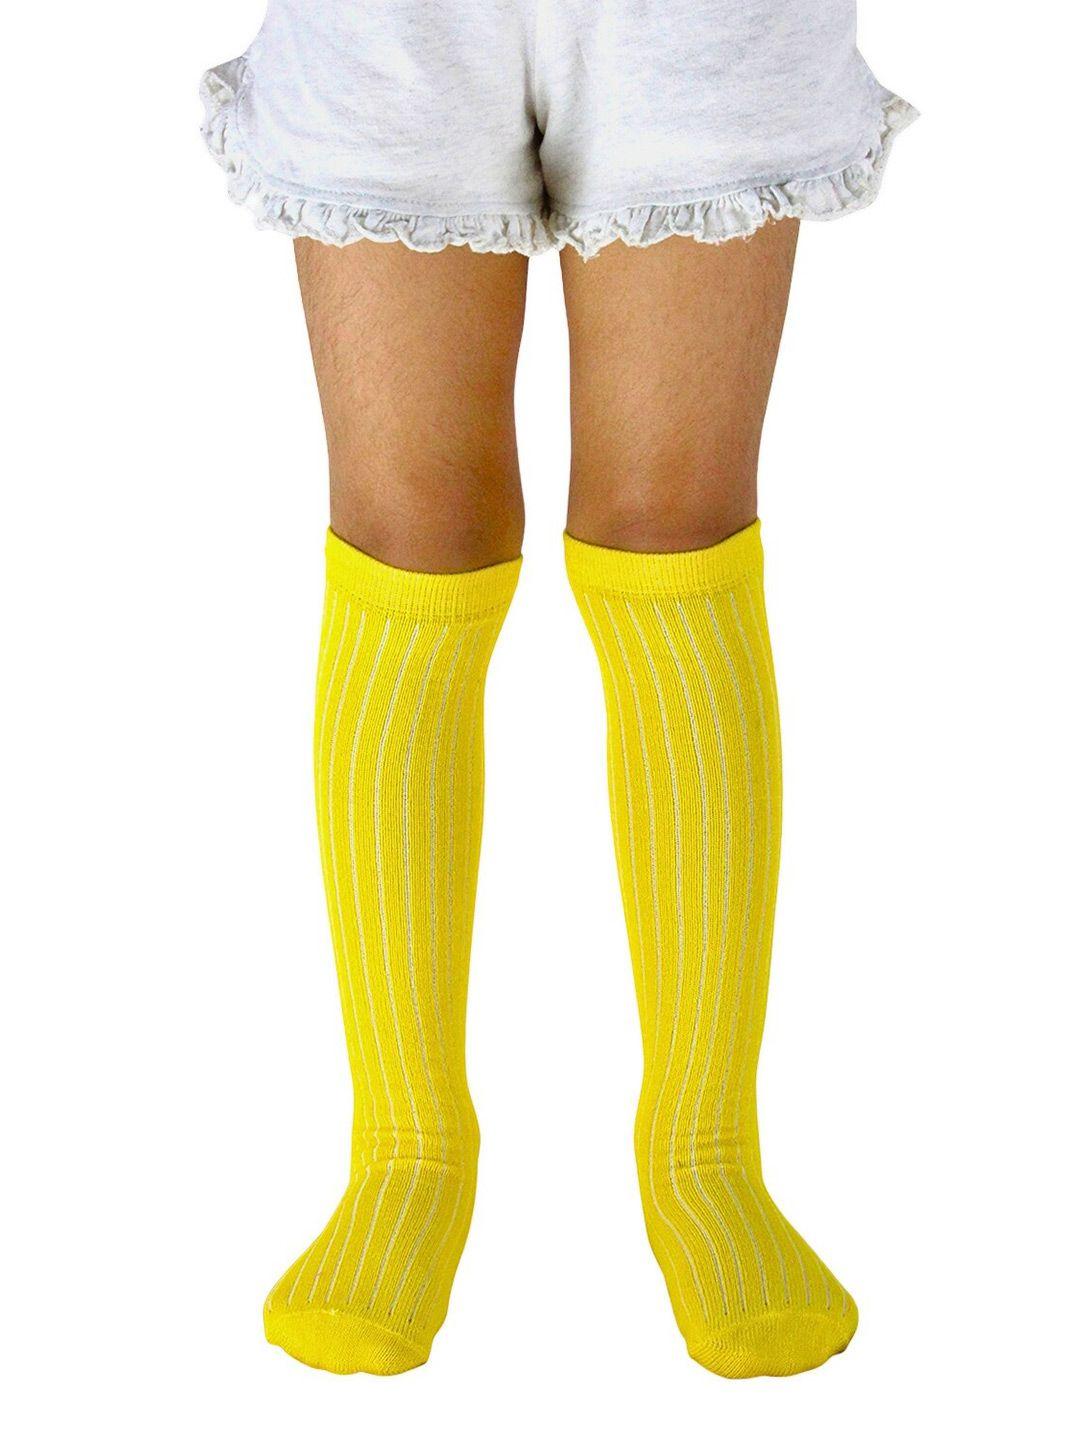 baesd kids knee-length socks